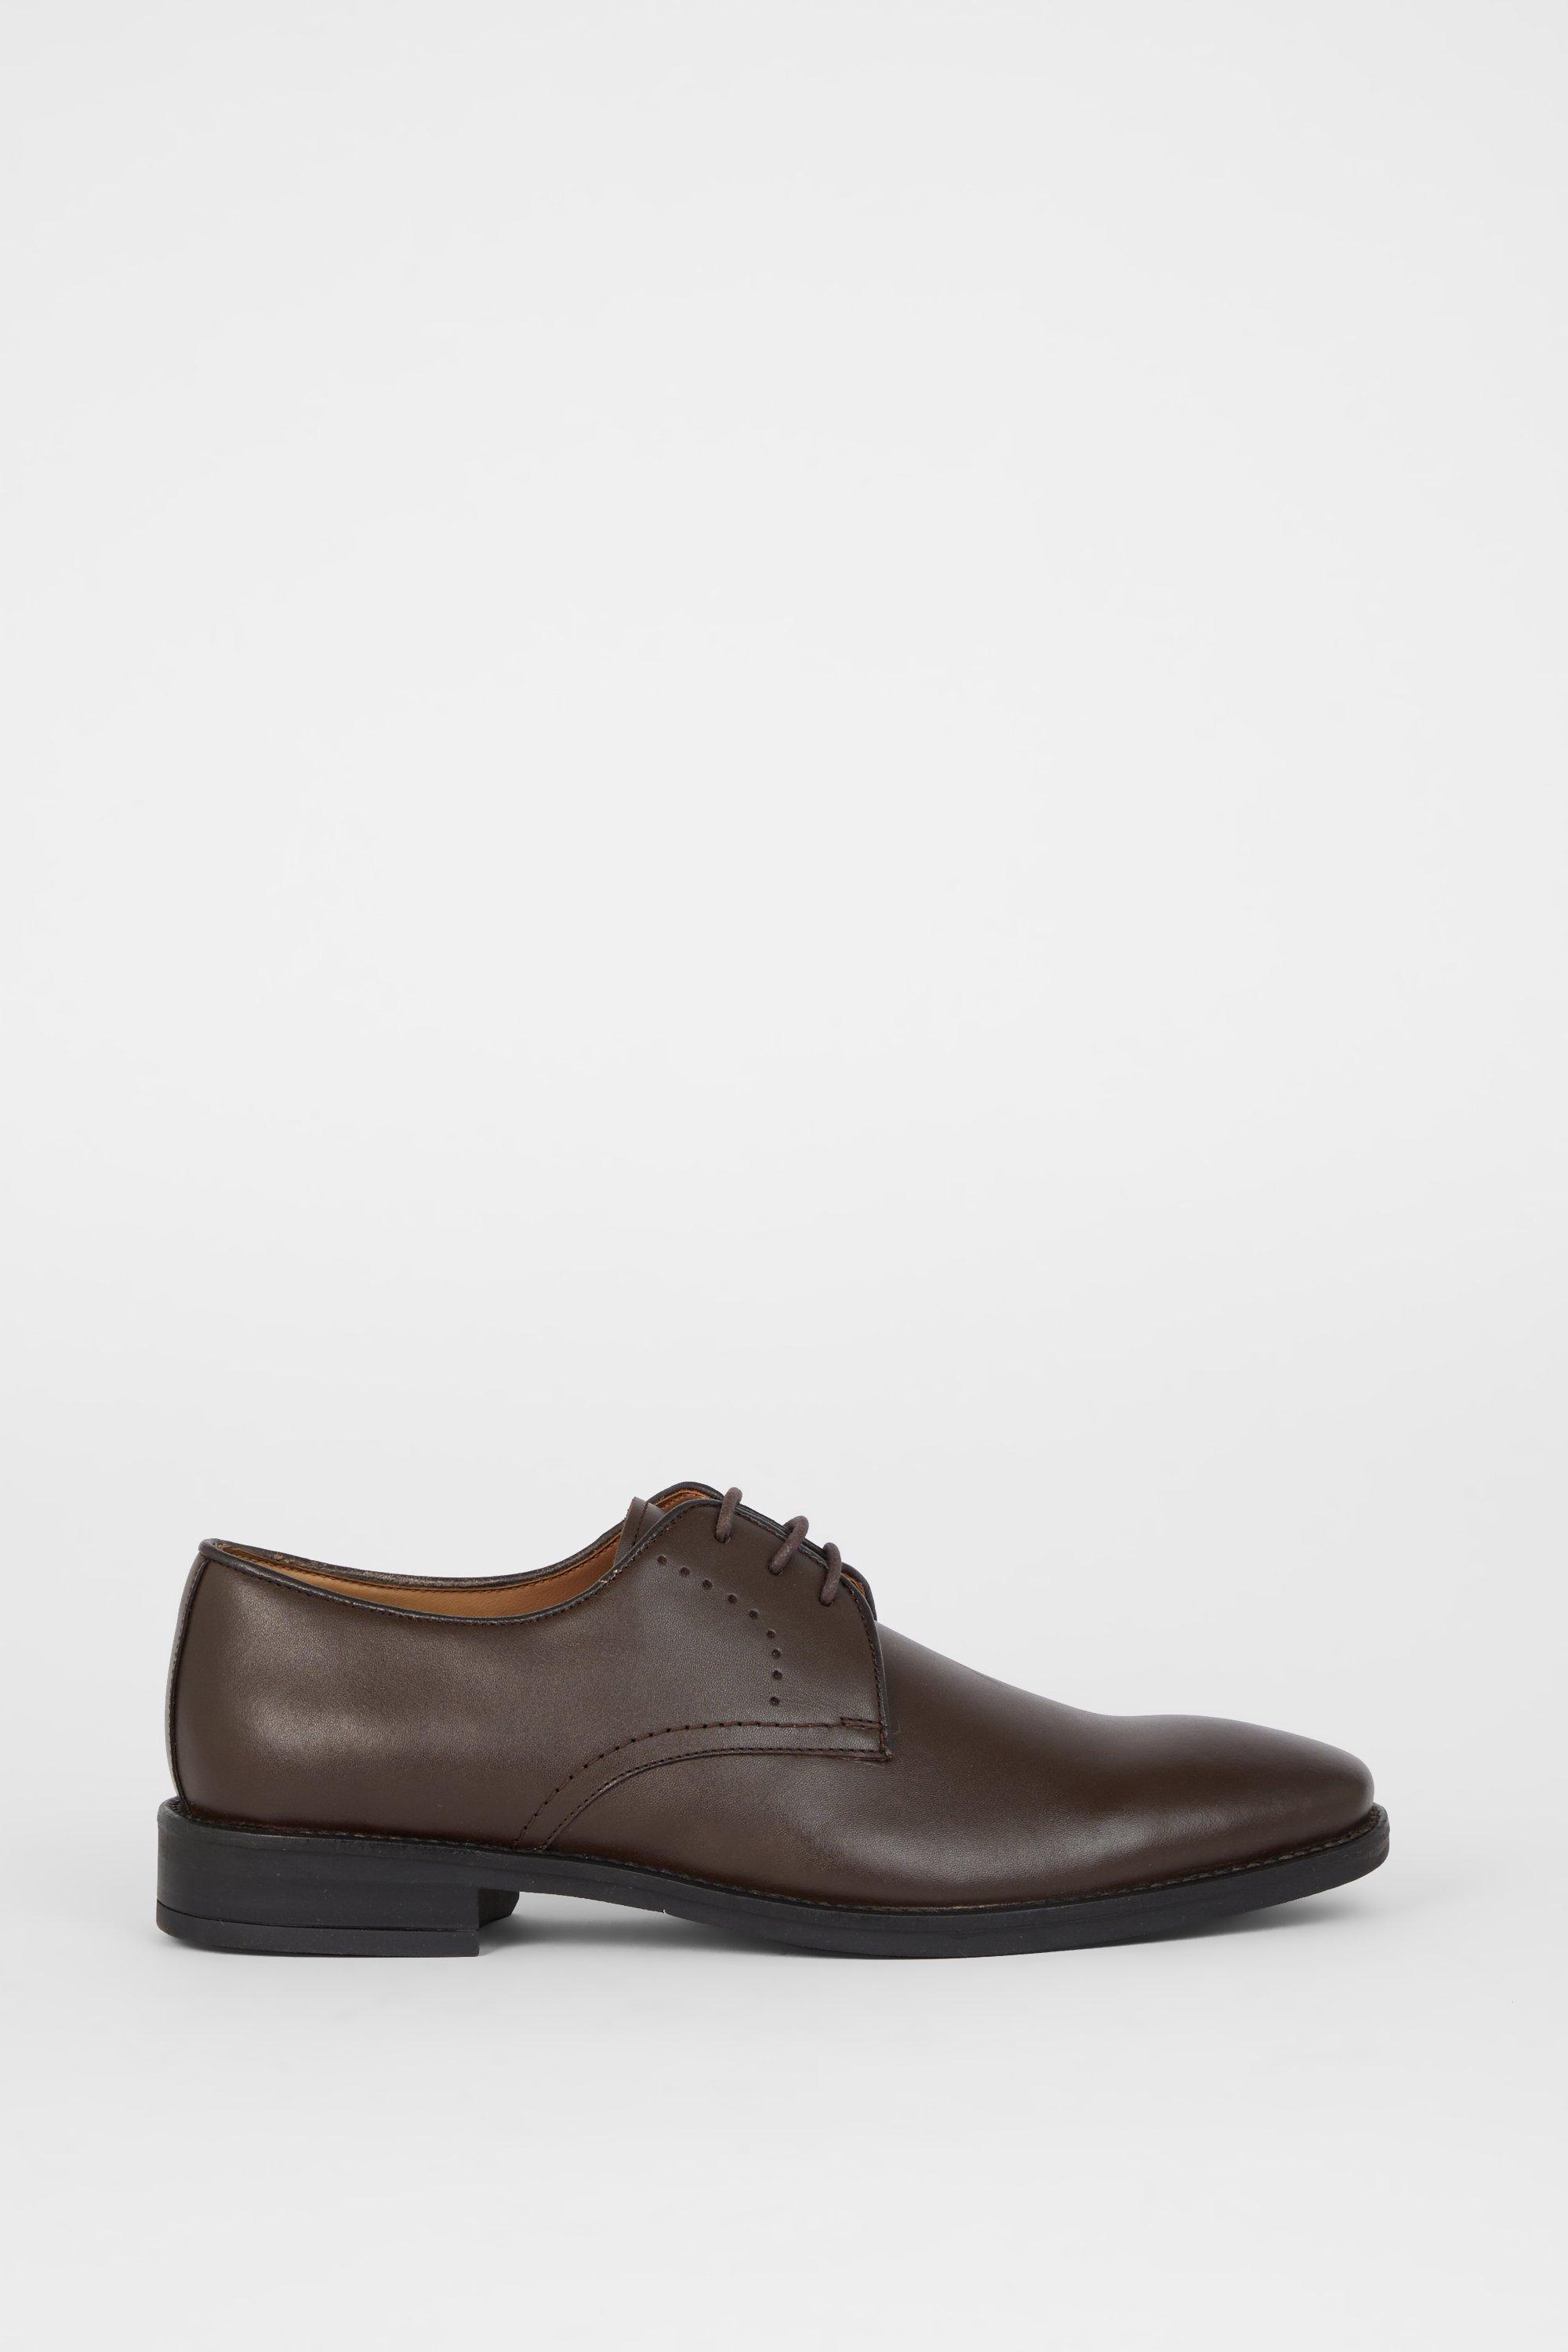 Кожаные туфли дерби Airsoft Comfort с перфорацией на шнуровке Debenhams, коричневый